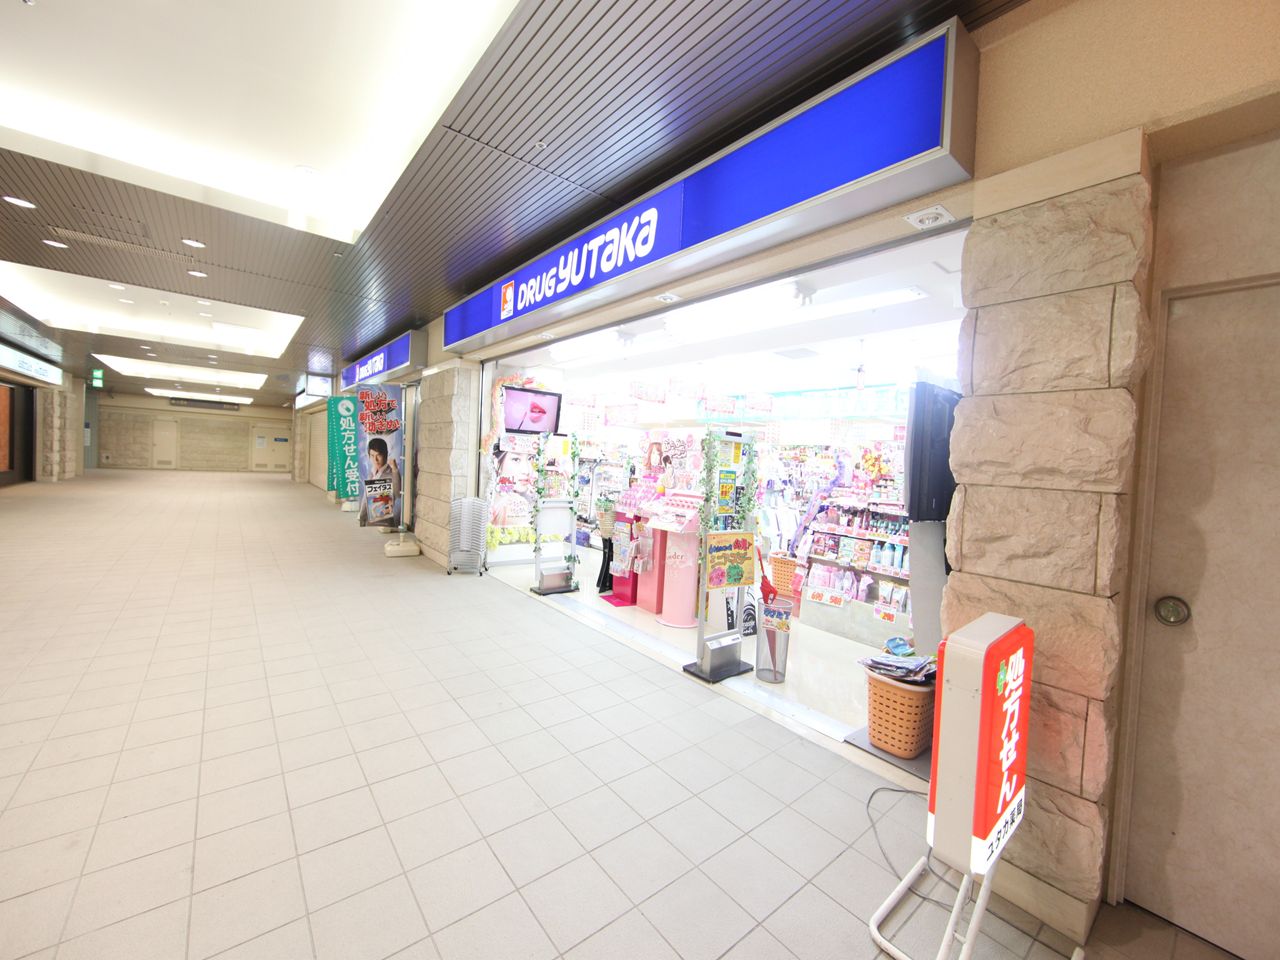 Dorakkusutoa. Drag Yutaka Ozone Station shop 300m until (drugstore)